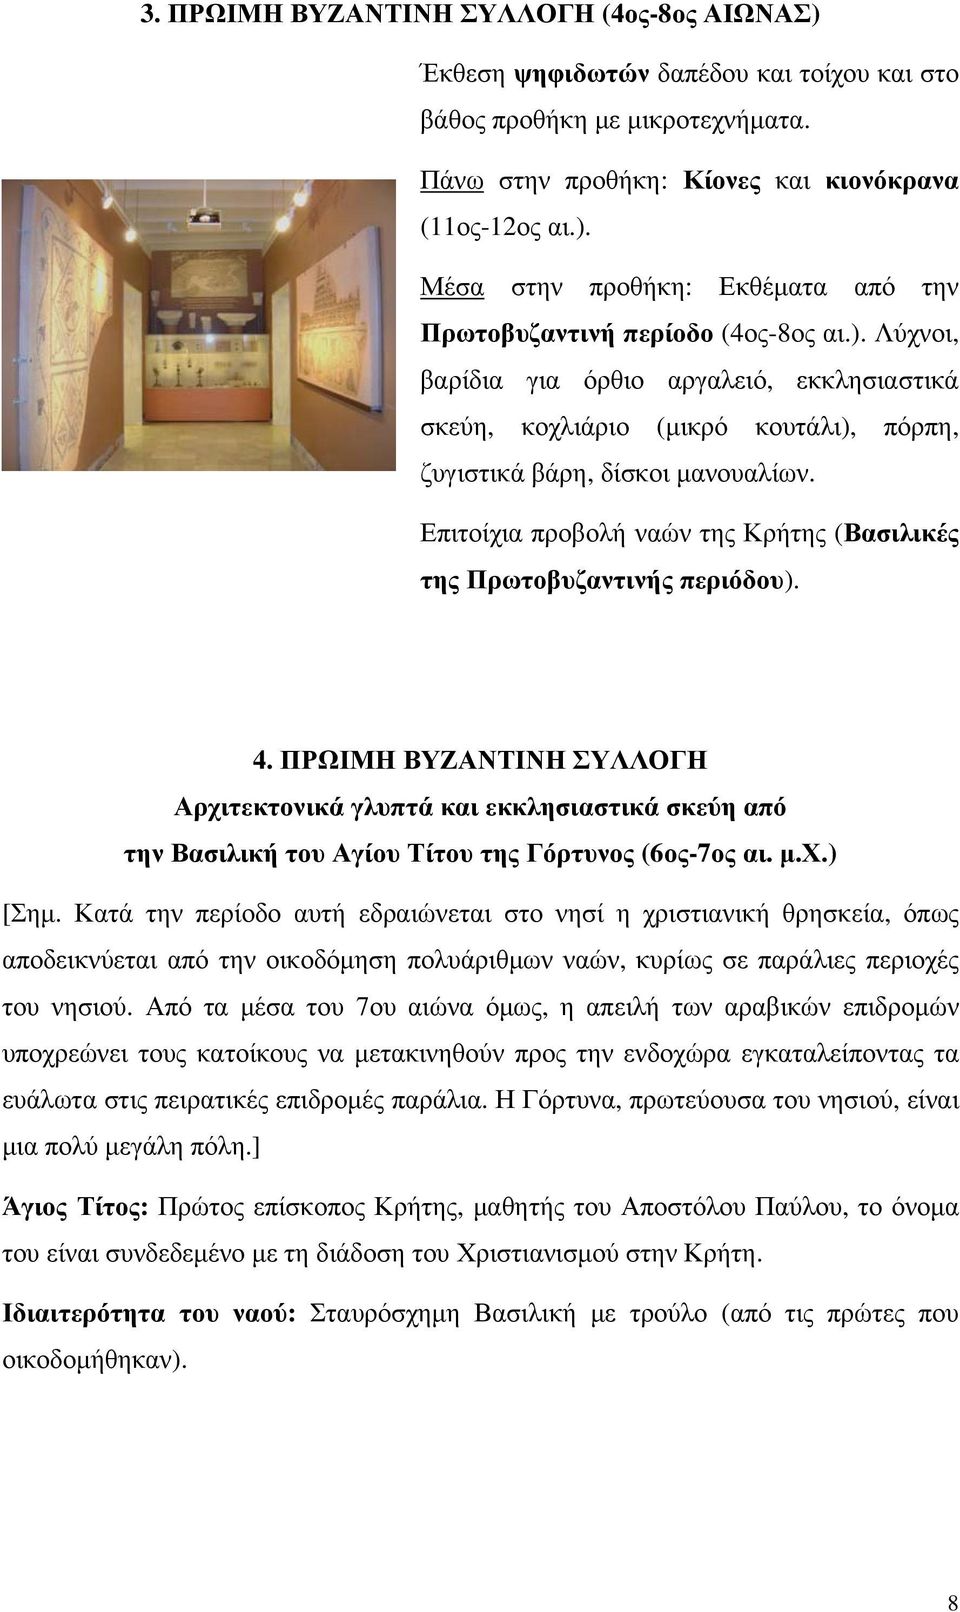 Επιτοίχια προβολή ναών της Κρήτης (Βασιλικές της Πρωτοβυζαντινής περιόδου). 4.